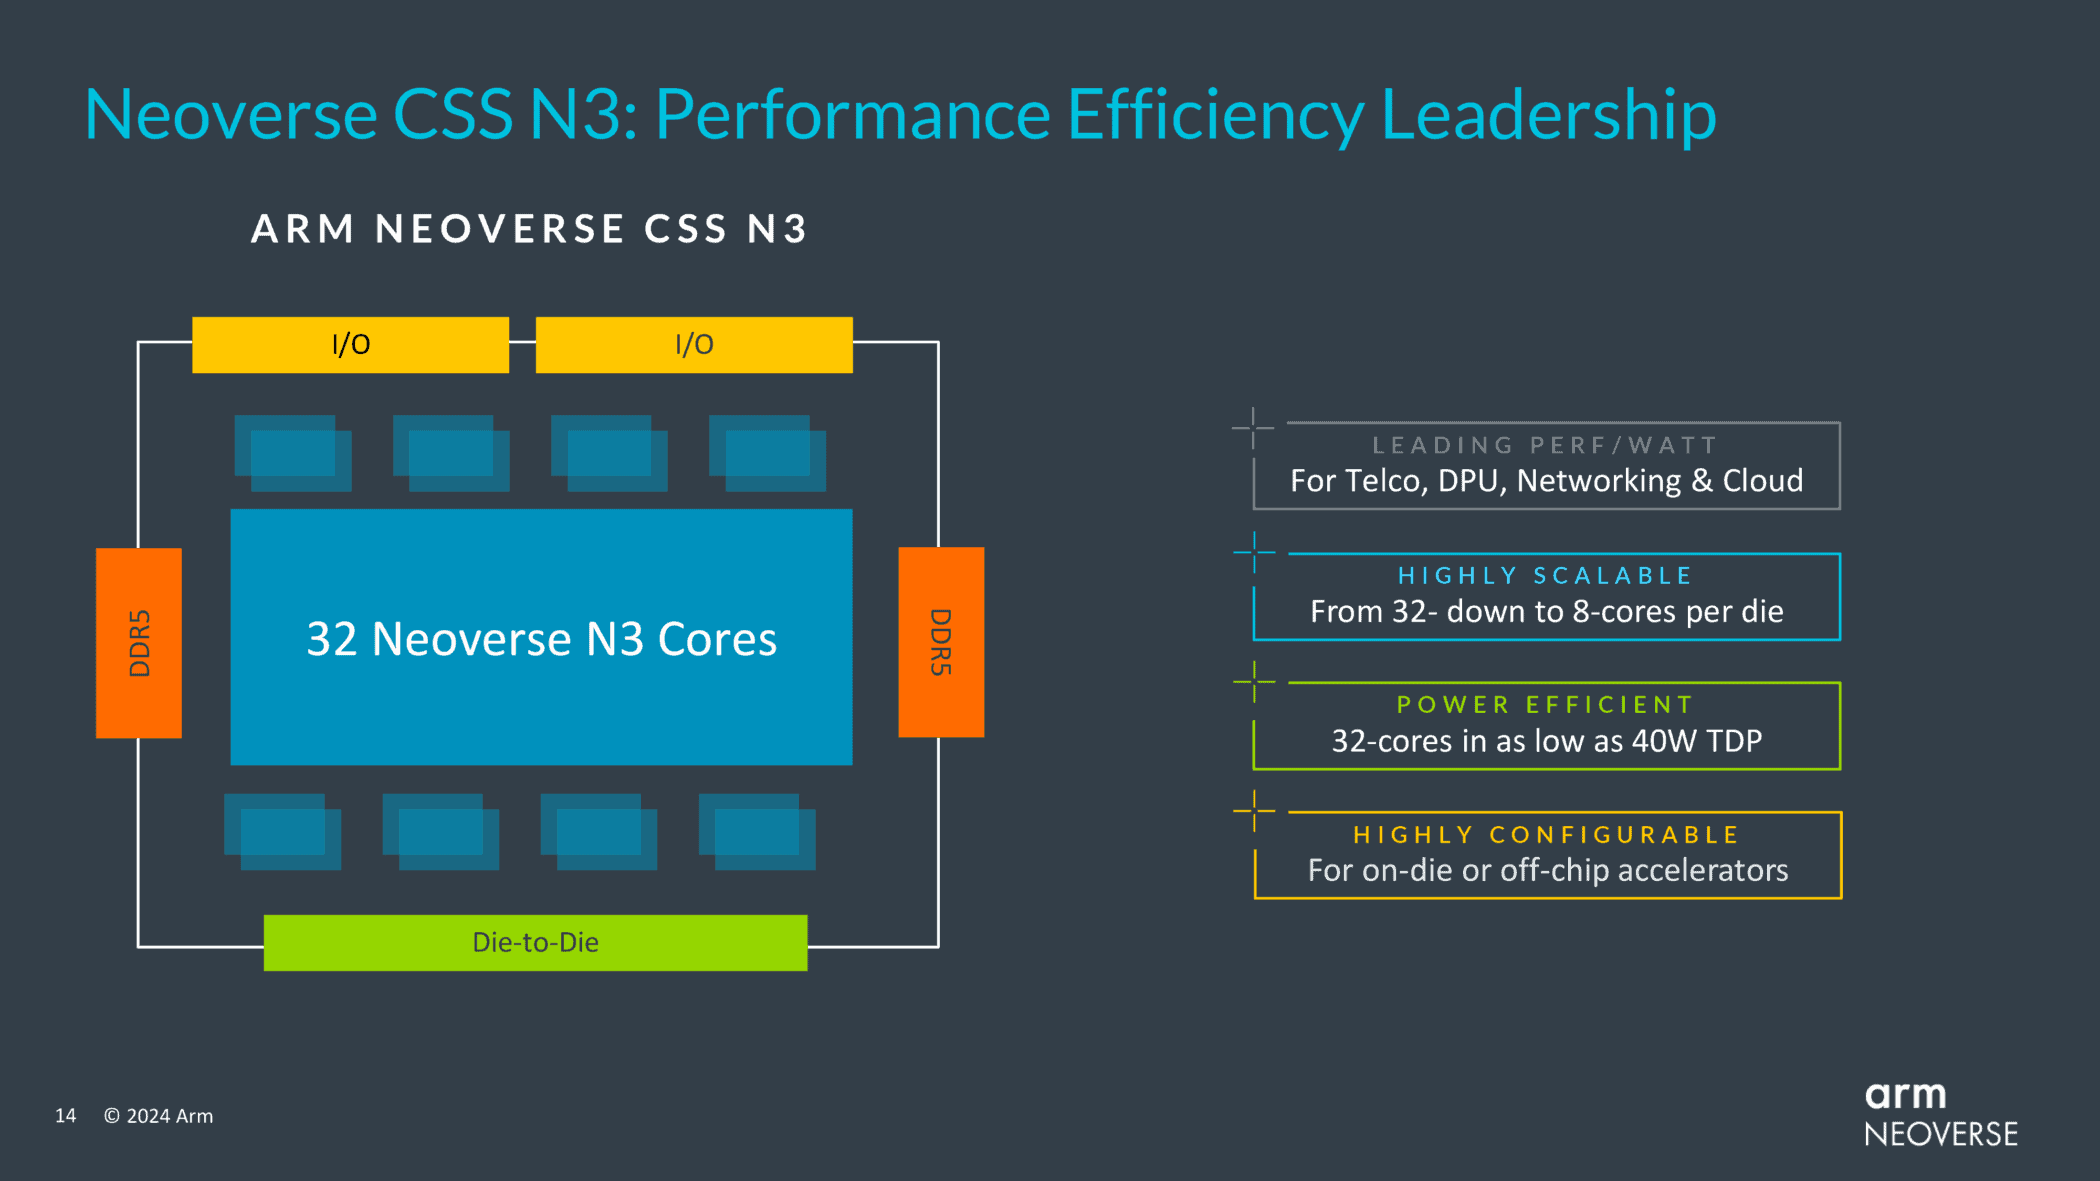 neoverse css n3 performance efficiency leadership